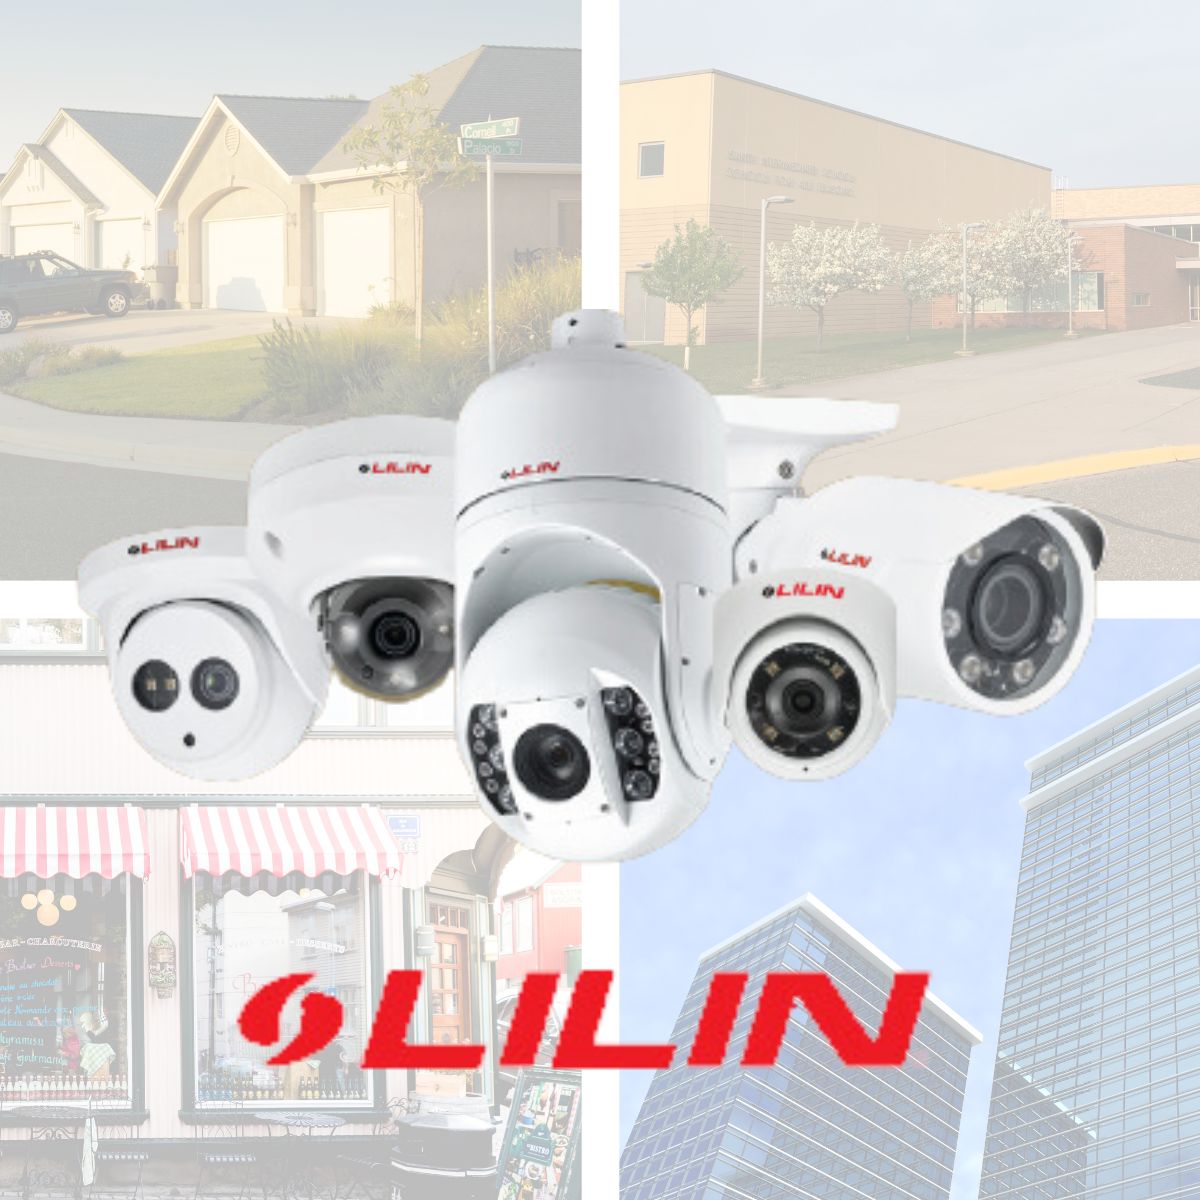 Lilin security cameras